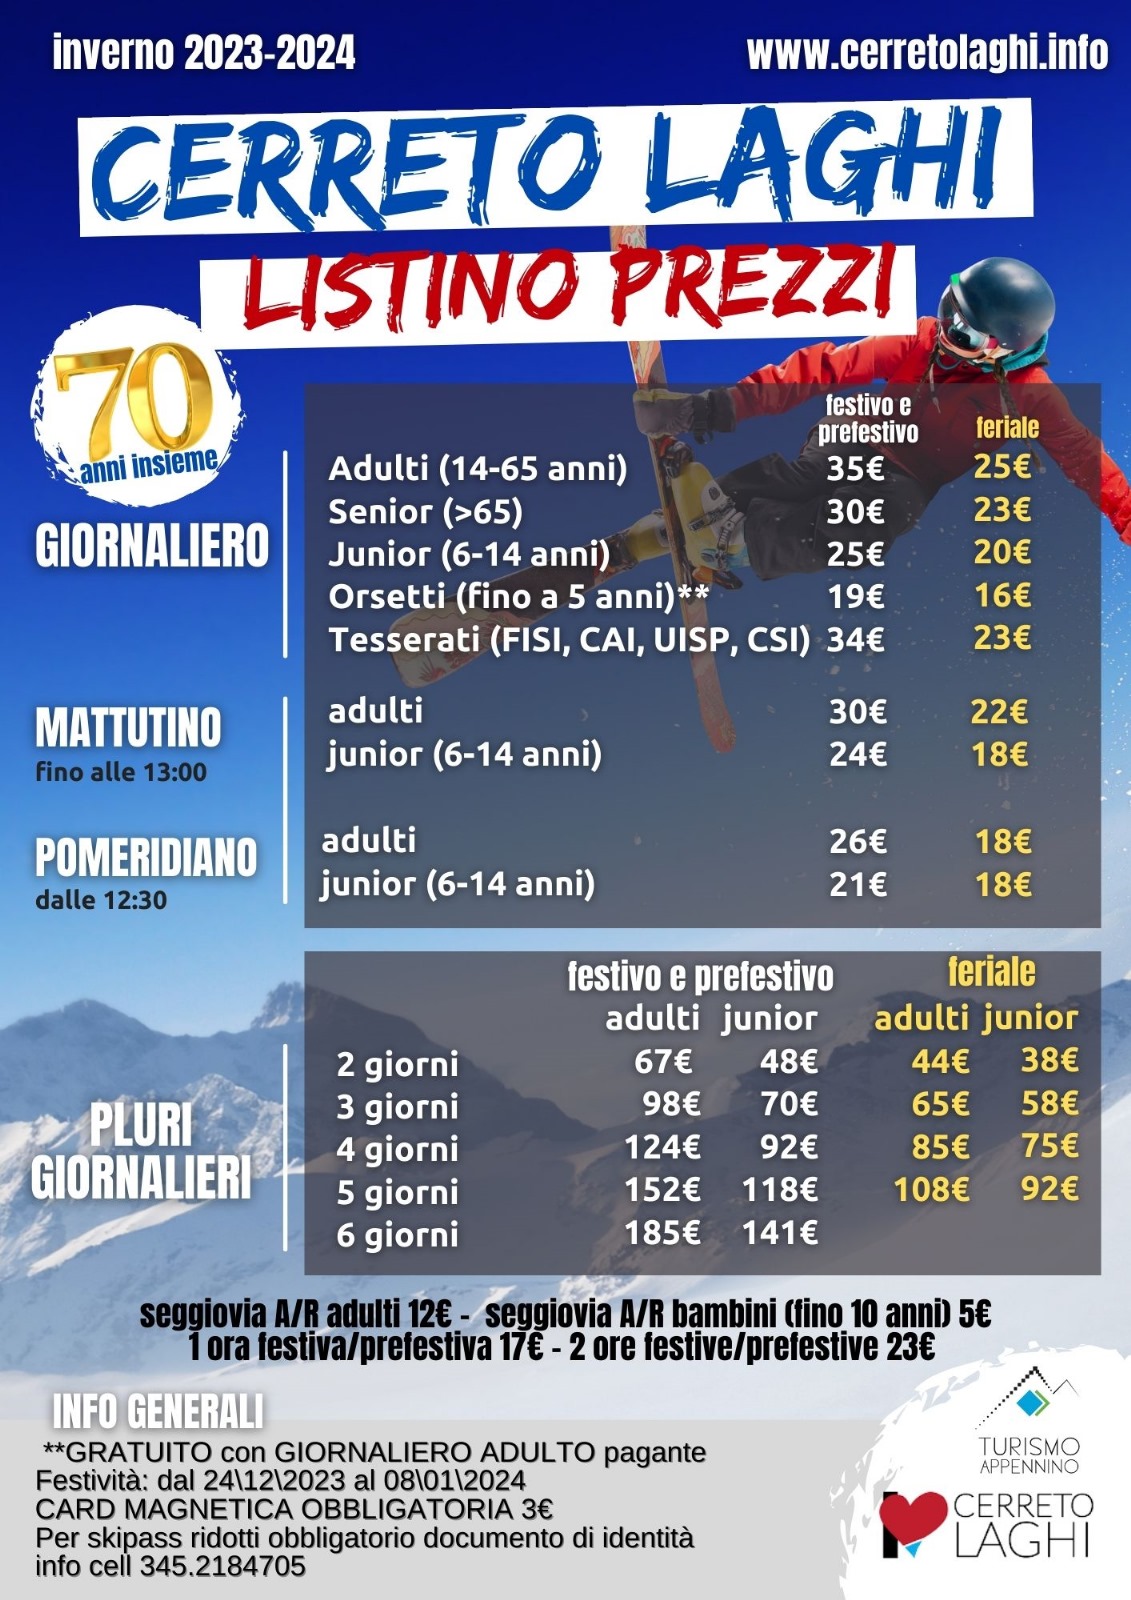 Cerreto Laghi listono prezzi 2023/2024